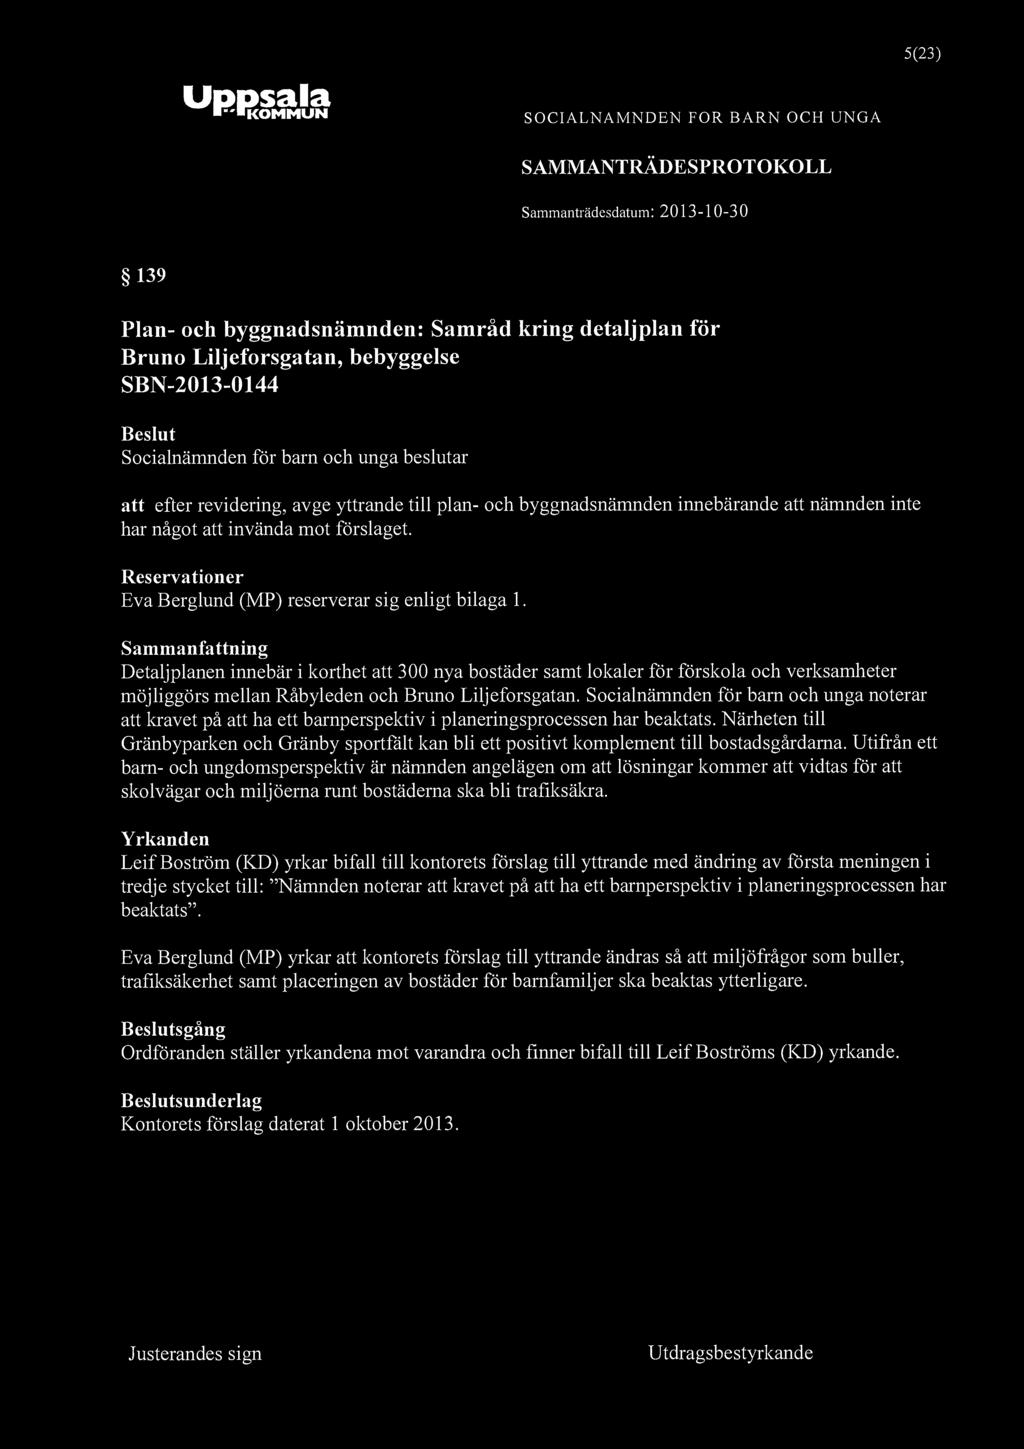 5(23) "KOMMUN SOCIALNÄMNDEN FOR BARN OCH UNGA 139 Plan- och byggnadsnämnden: Samråd kring detaljplan för Bruno Liljeforsgatan, bebyggelse SBN-2013-0144 att efter revidering, avge